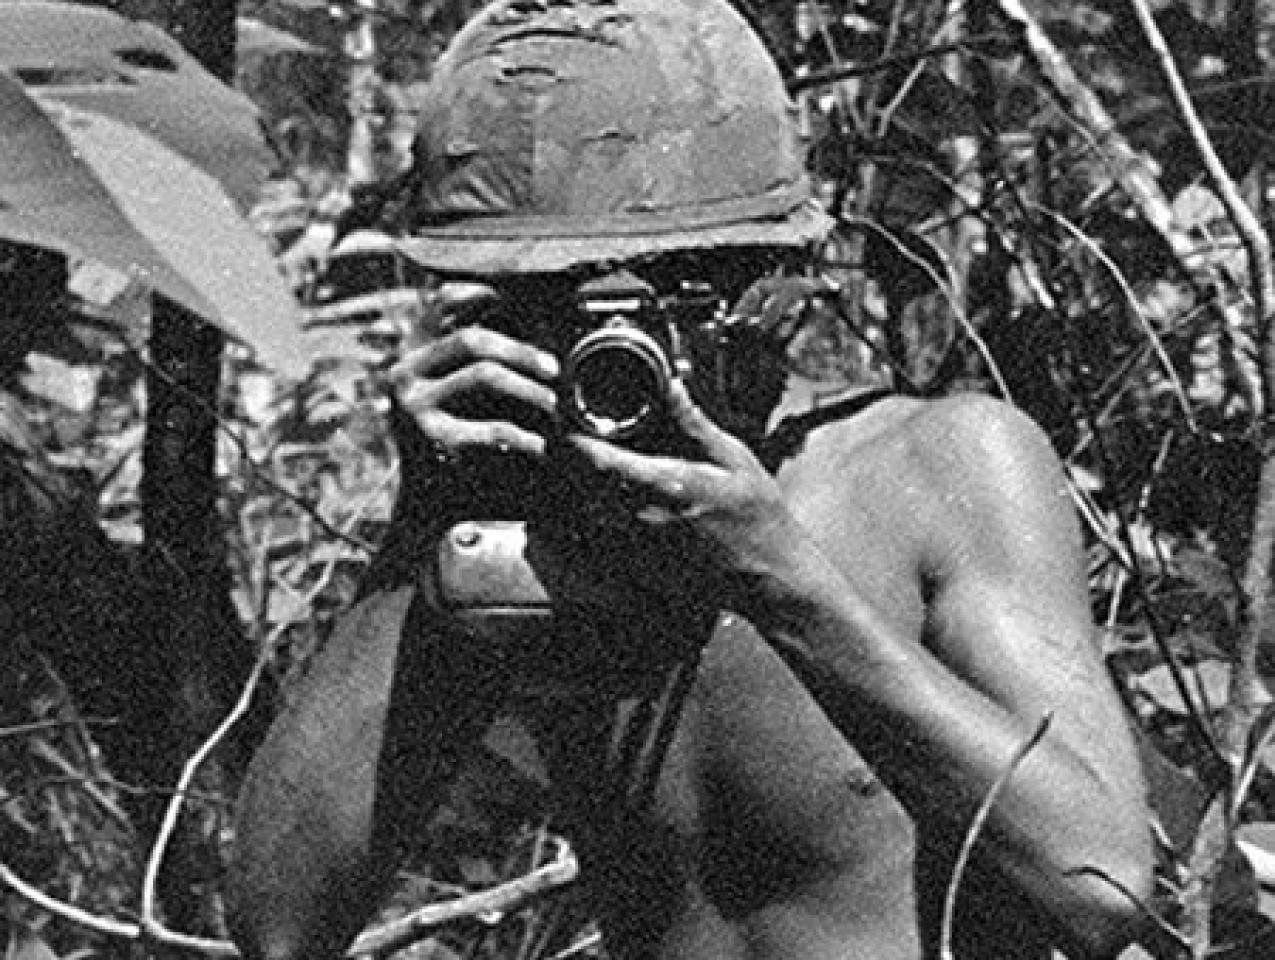 Image for We Shot The War: Overseas Weekly In Vietnam